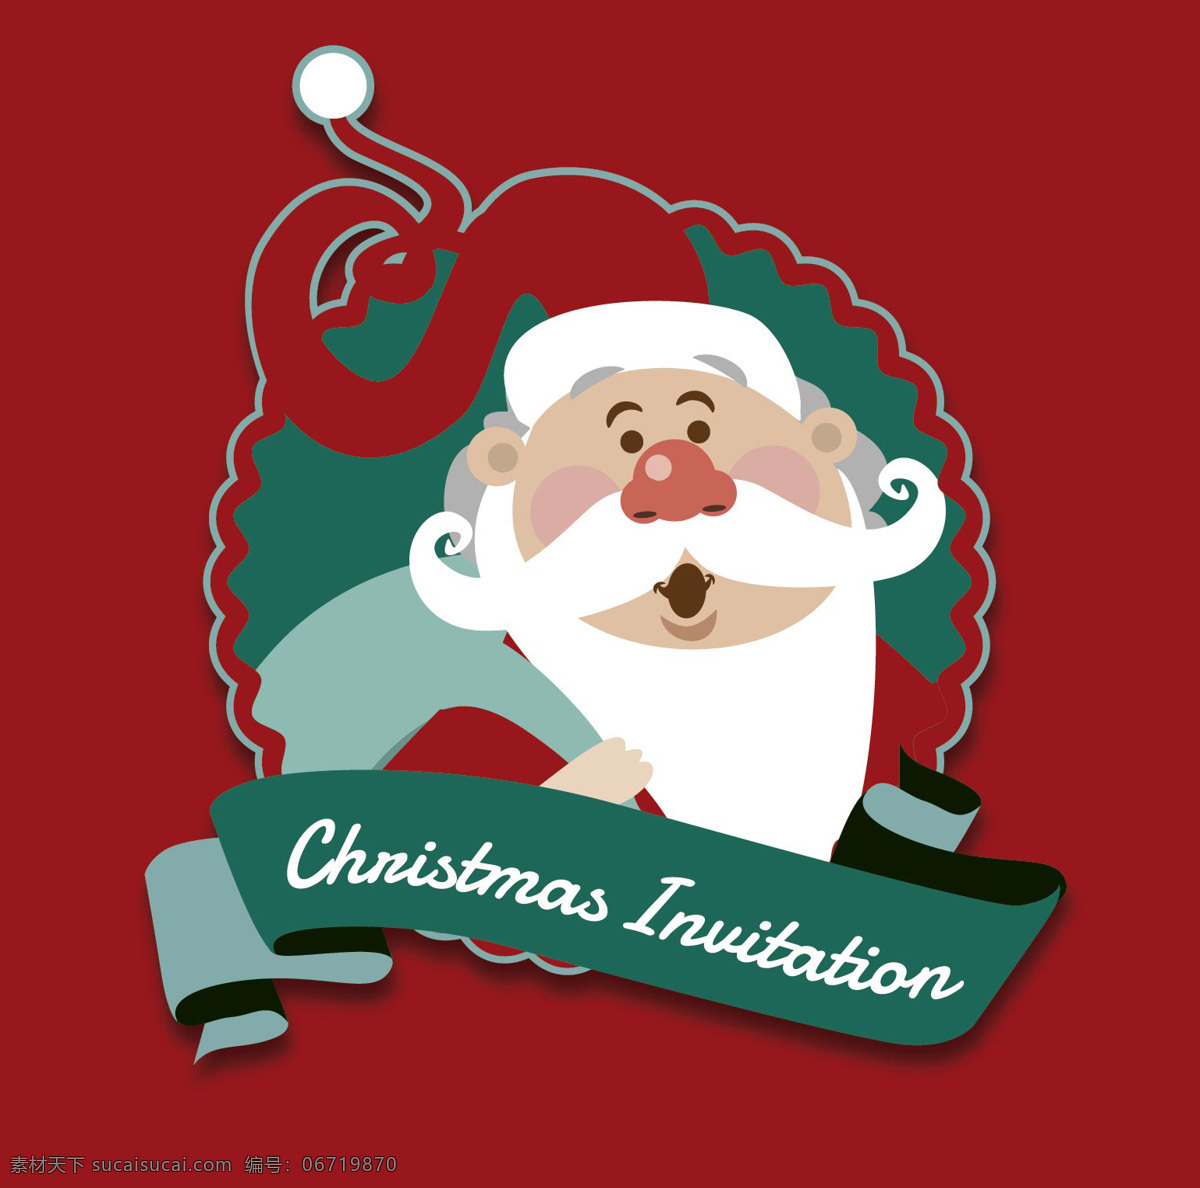 圣诞 红 santa 邀请 标签 背景壁纸 庆典和聚会 圣诞节 节日和季节 模板和模型